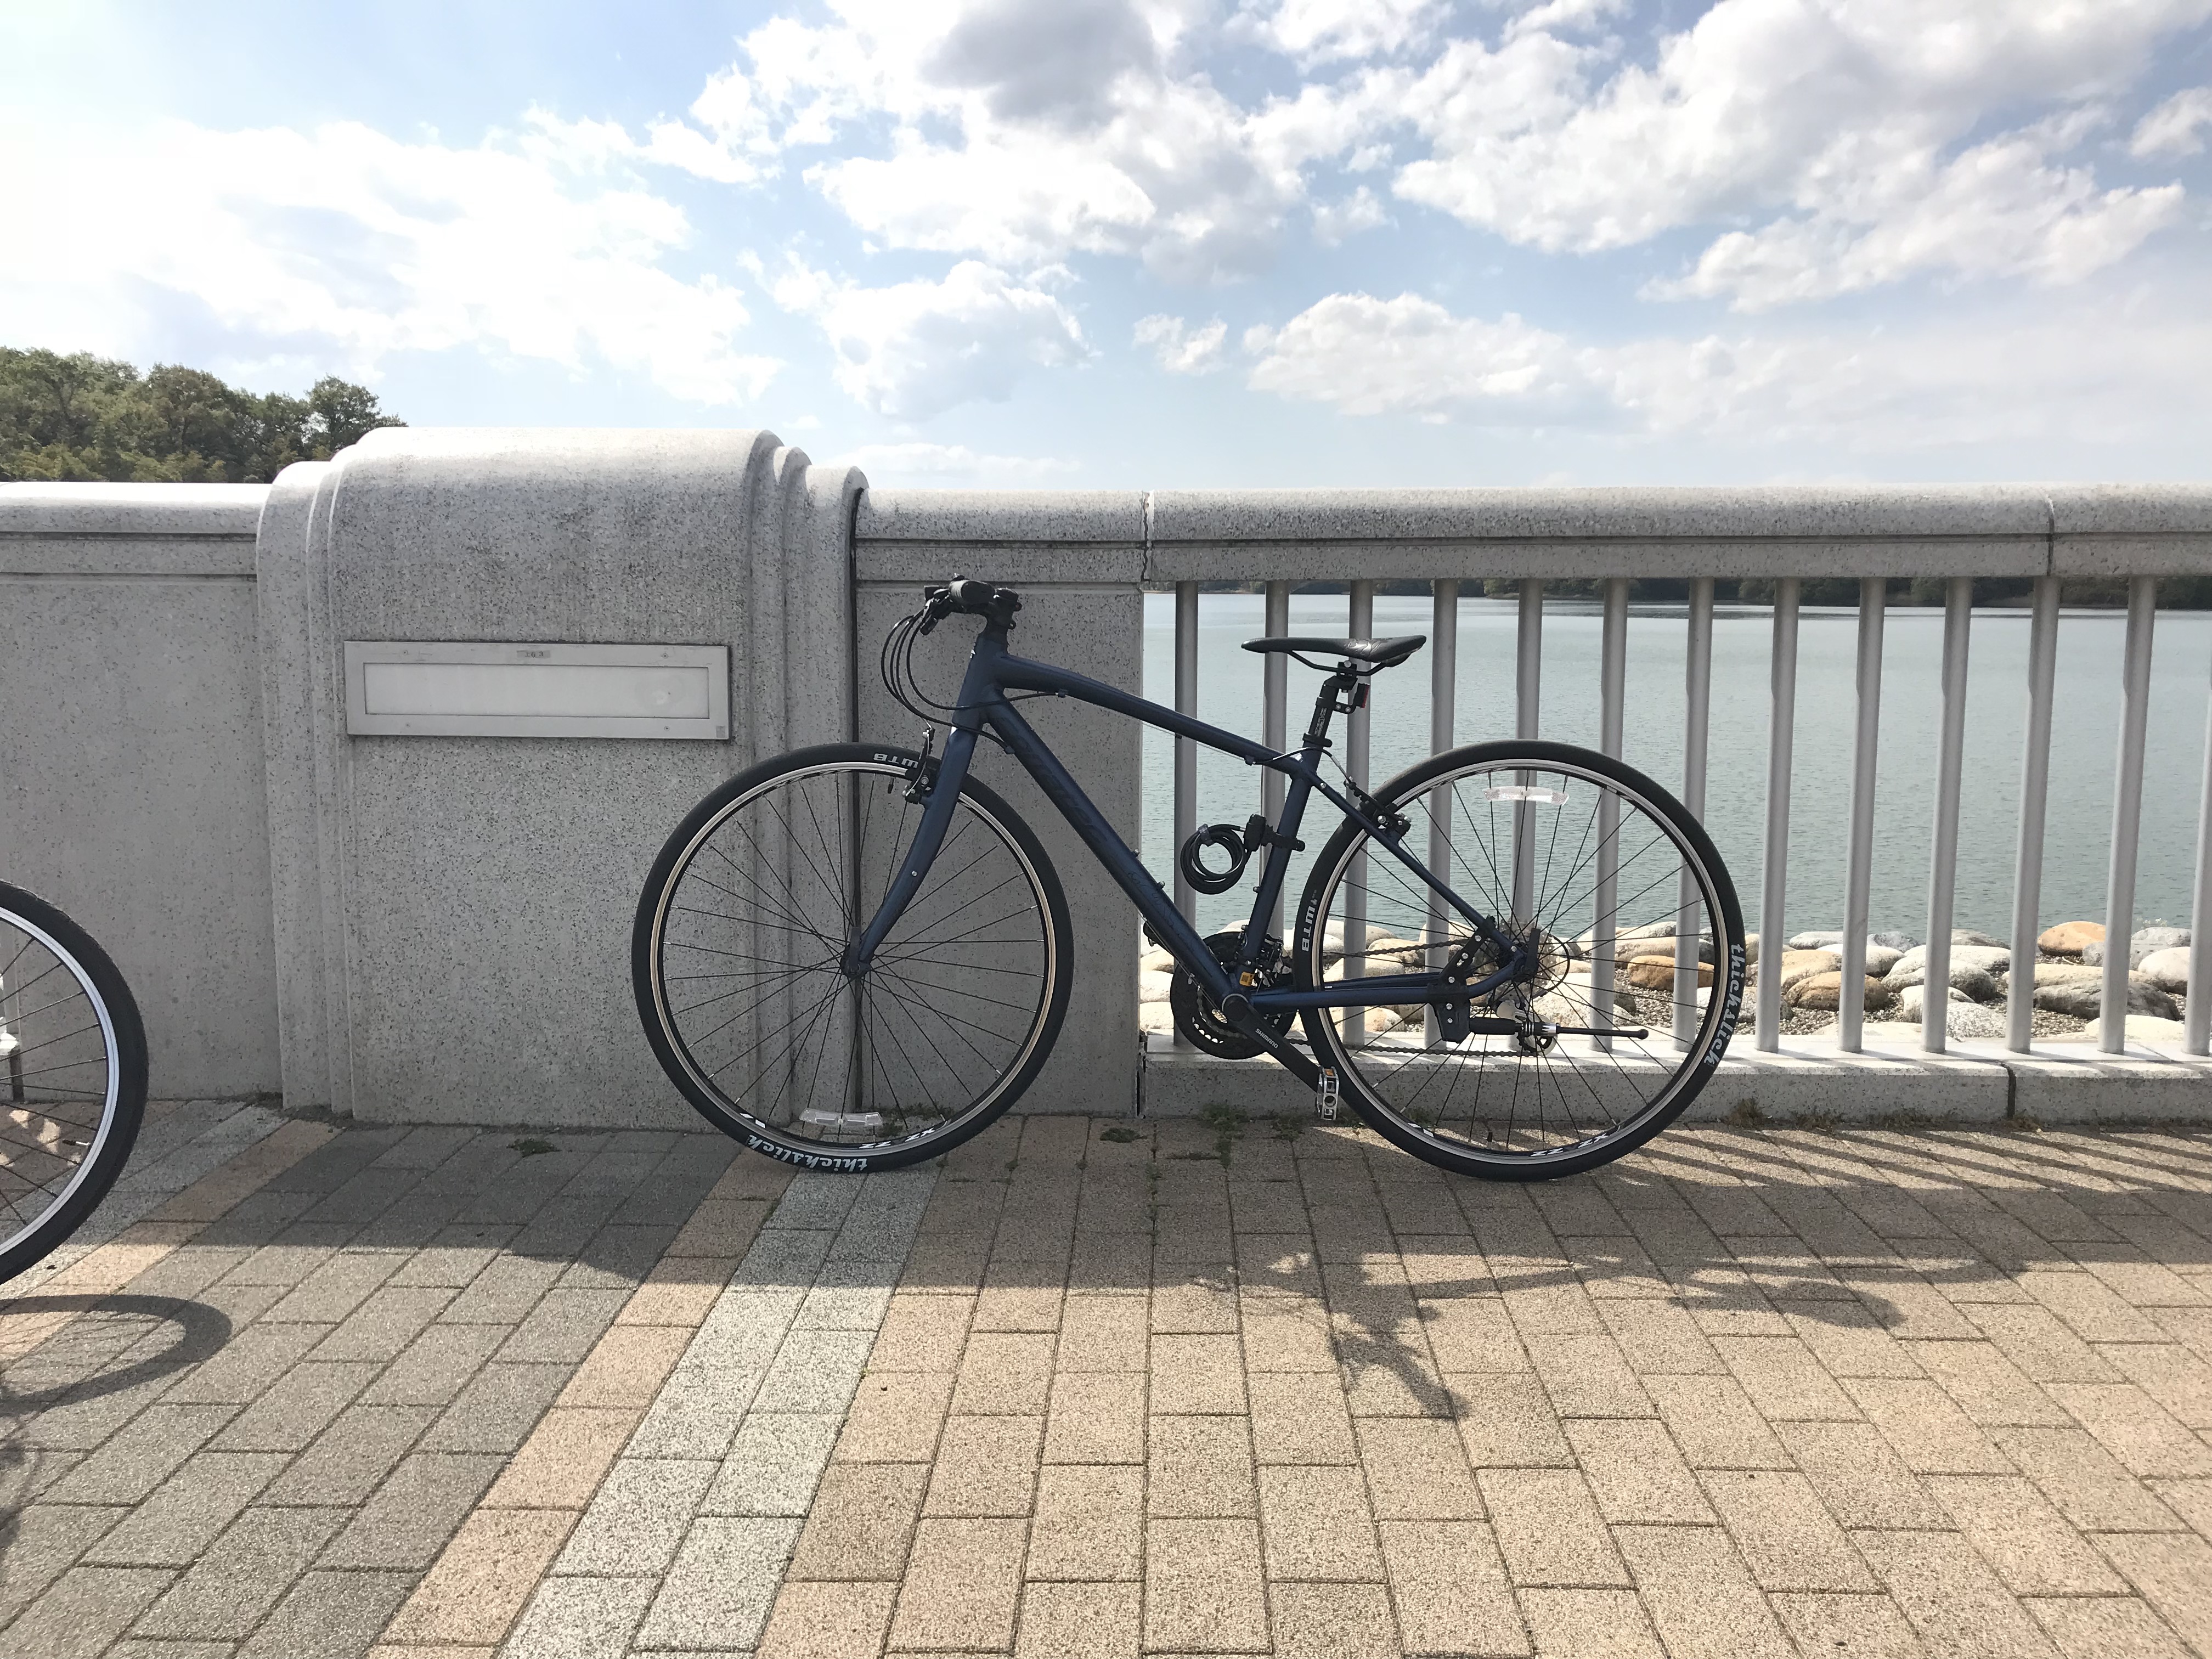 多摩湖自転車道路 〜 多摩湖までクロスバイクで。